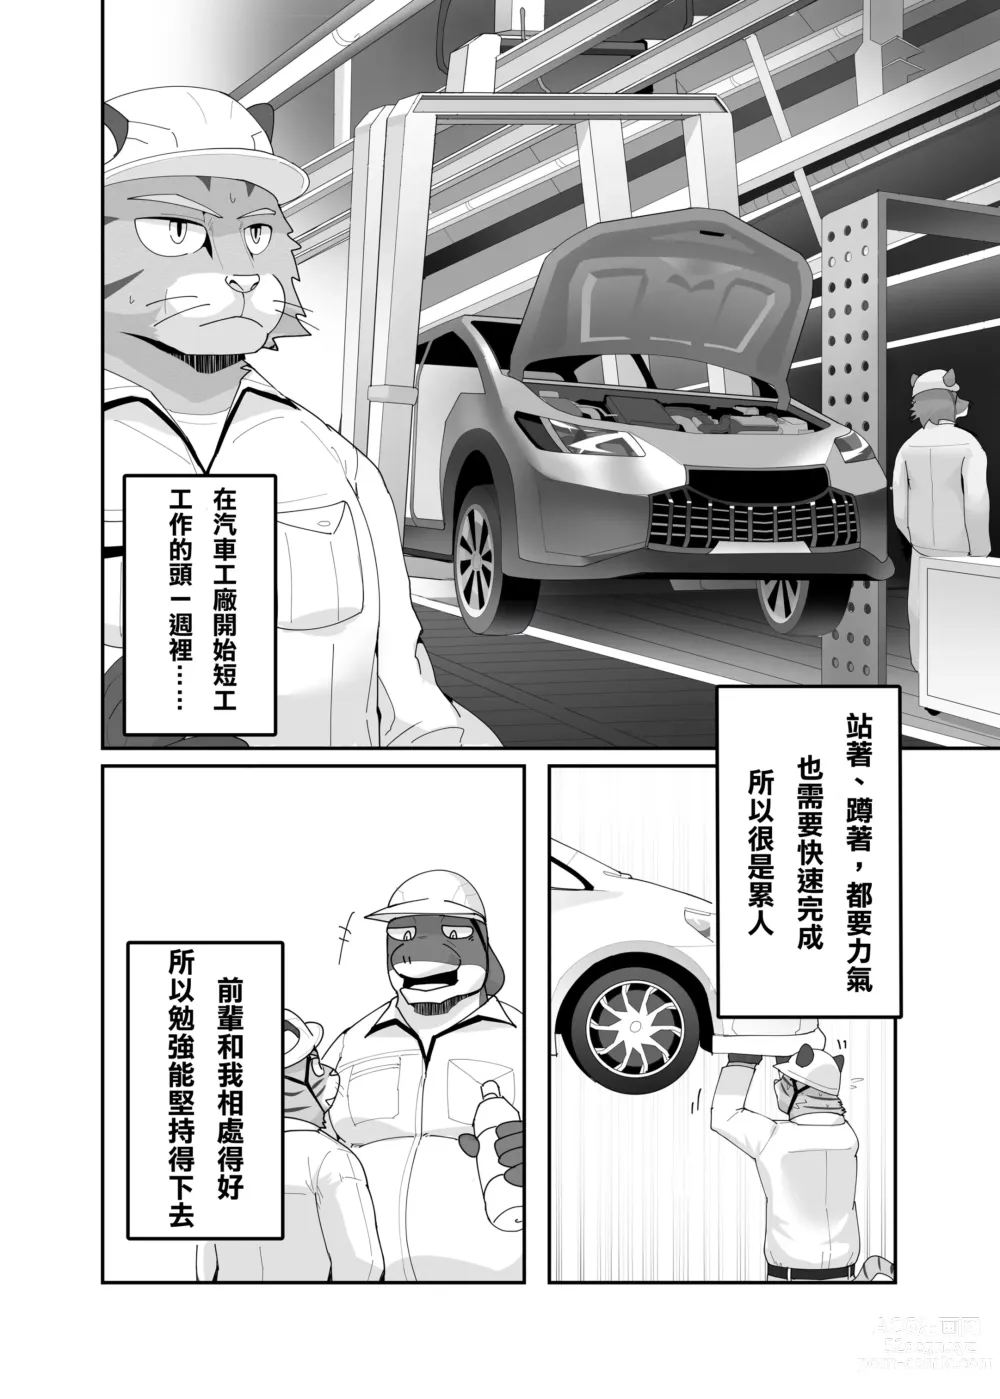 Page 4 of doujinshi 老式單身公寓中有位統御雄性們的主